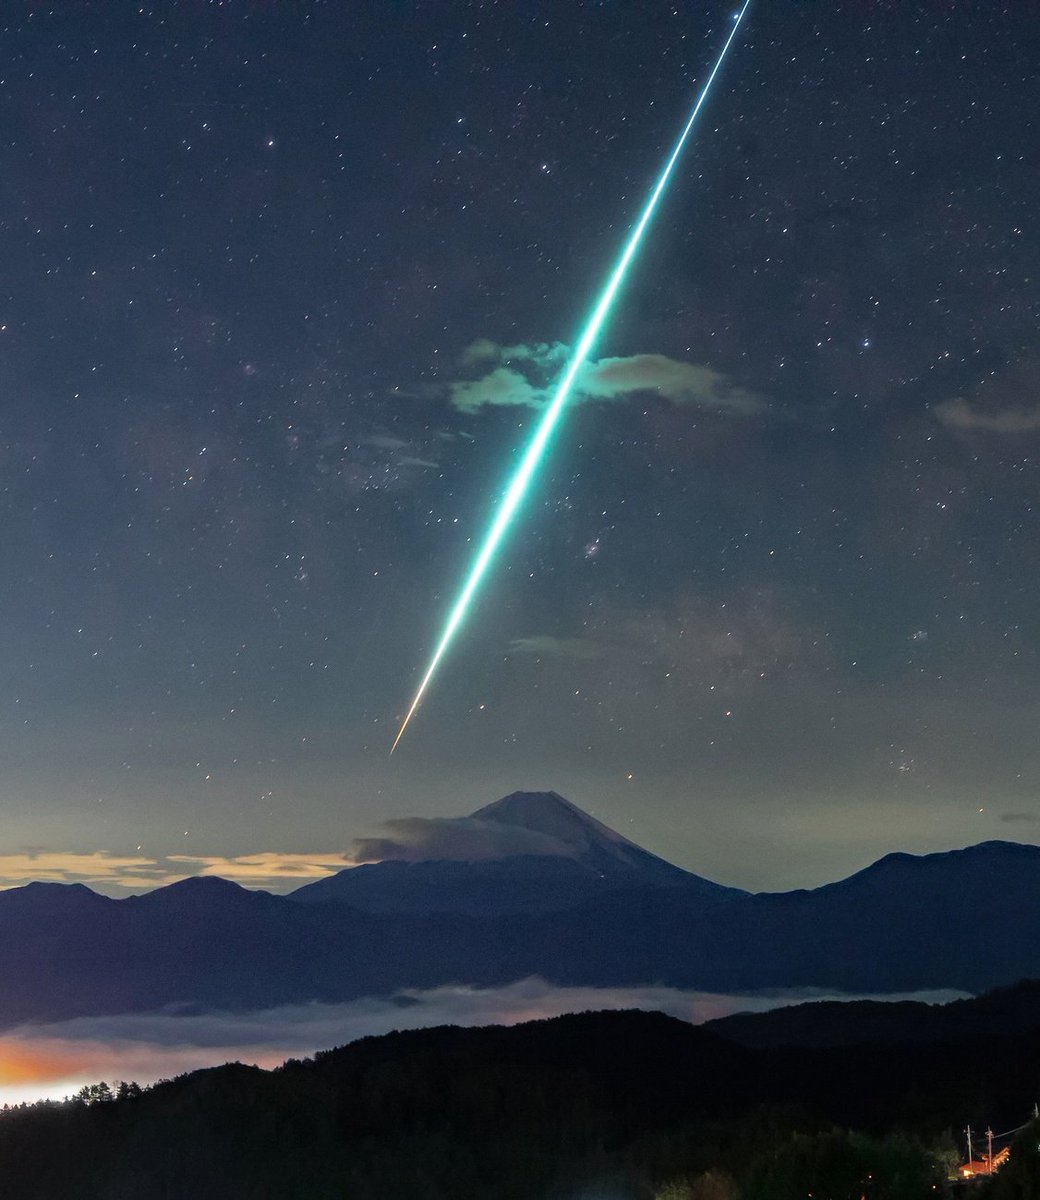 Bright meteor flash over Mount Fuji, Japan 🌠
Credit: @hosihosinosora